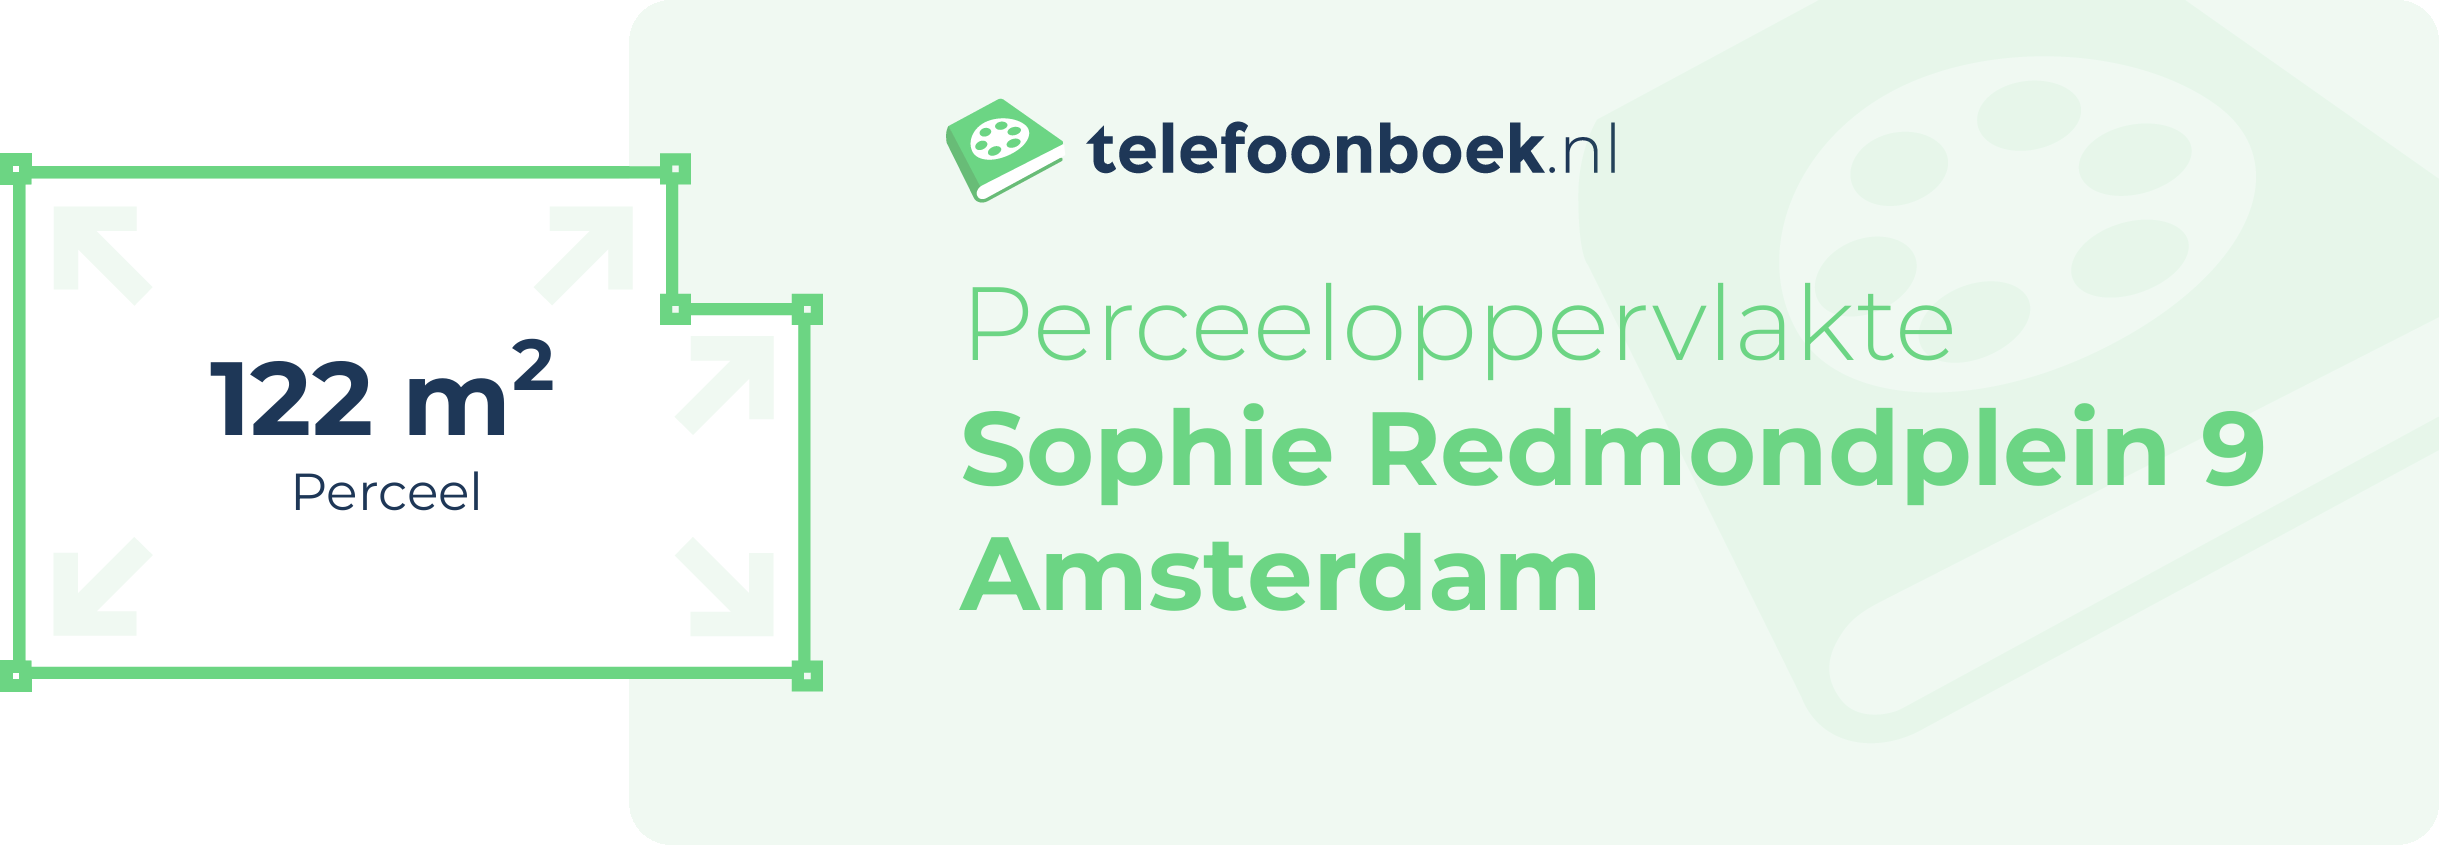 Perceeloppervlakte Sophie Redmondplein 9 Amsterdam